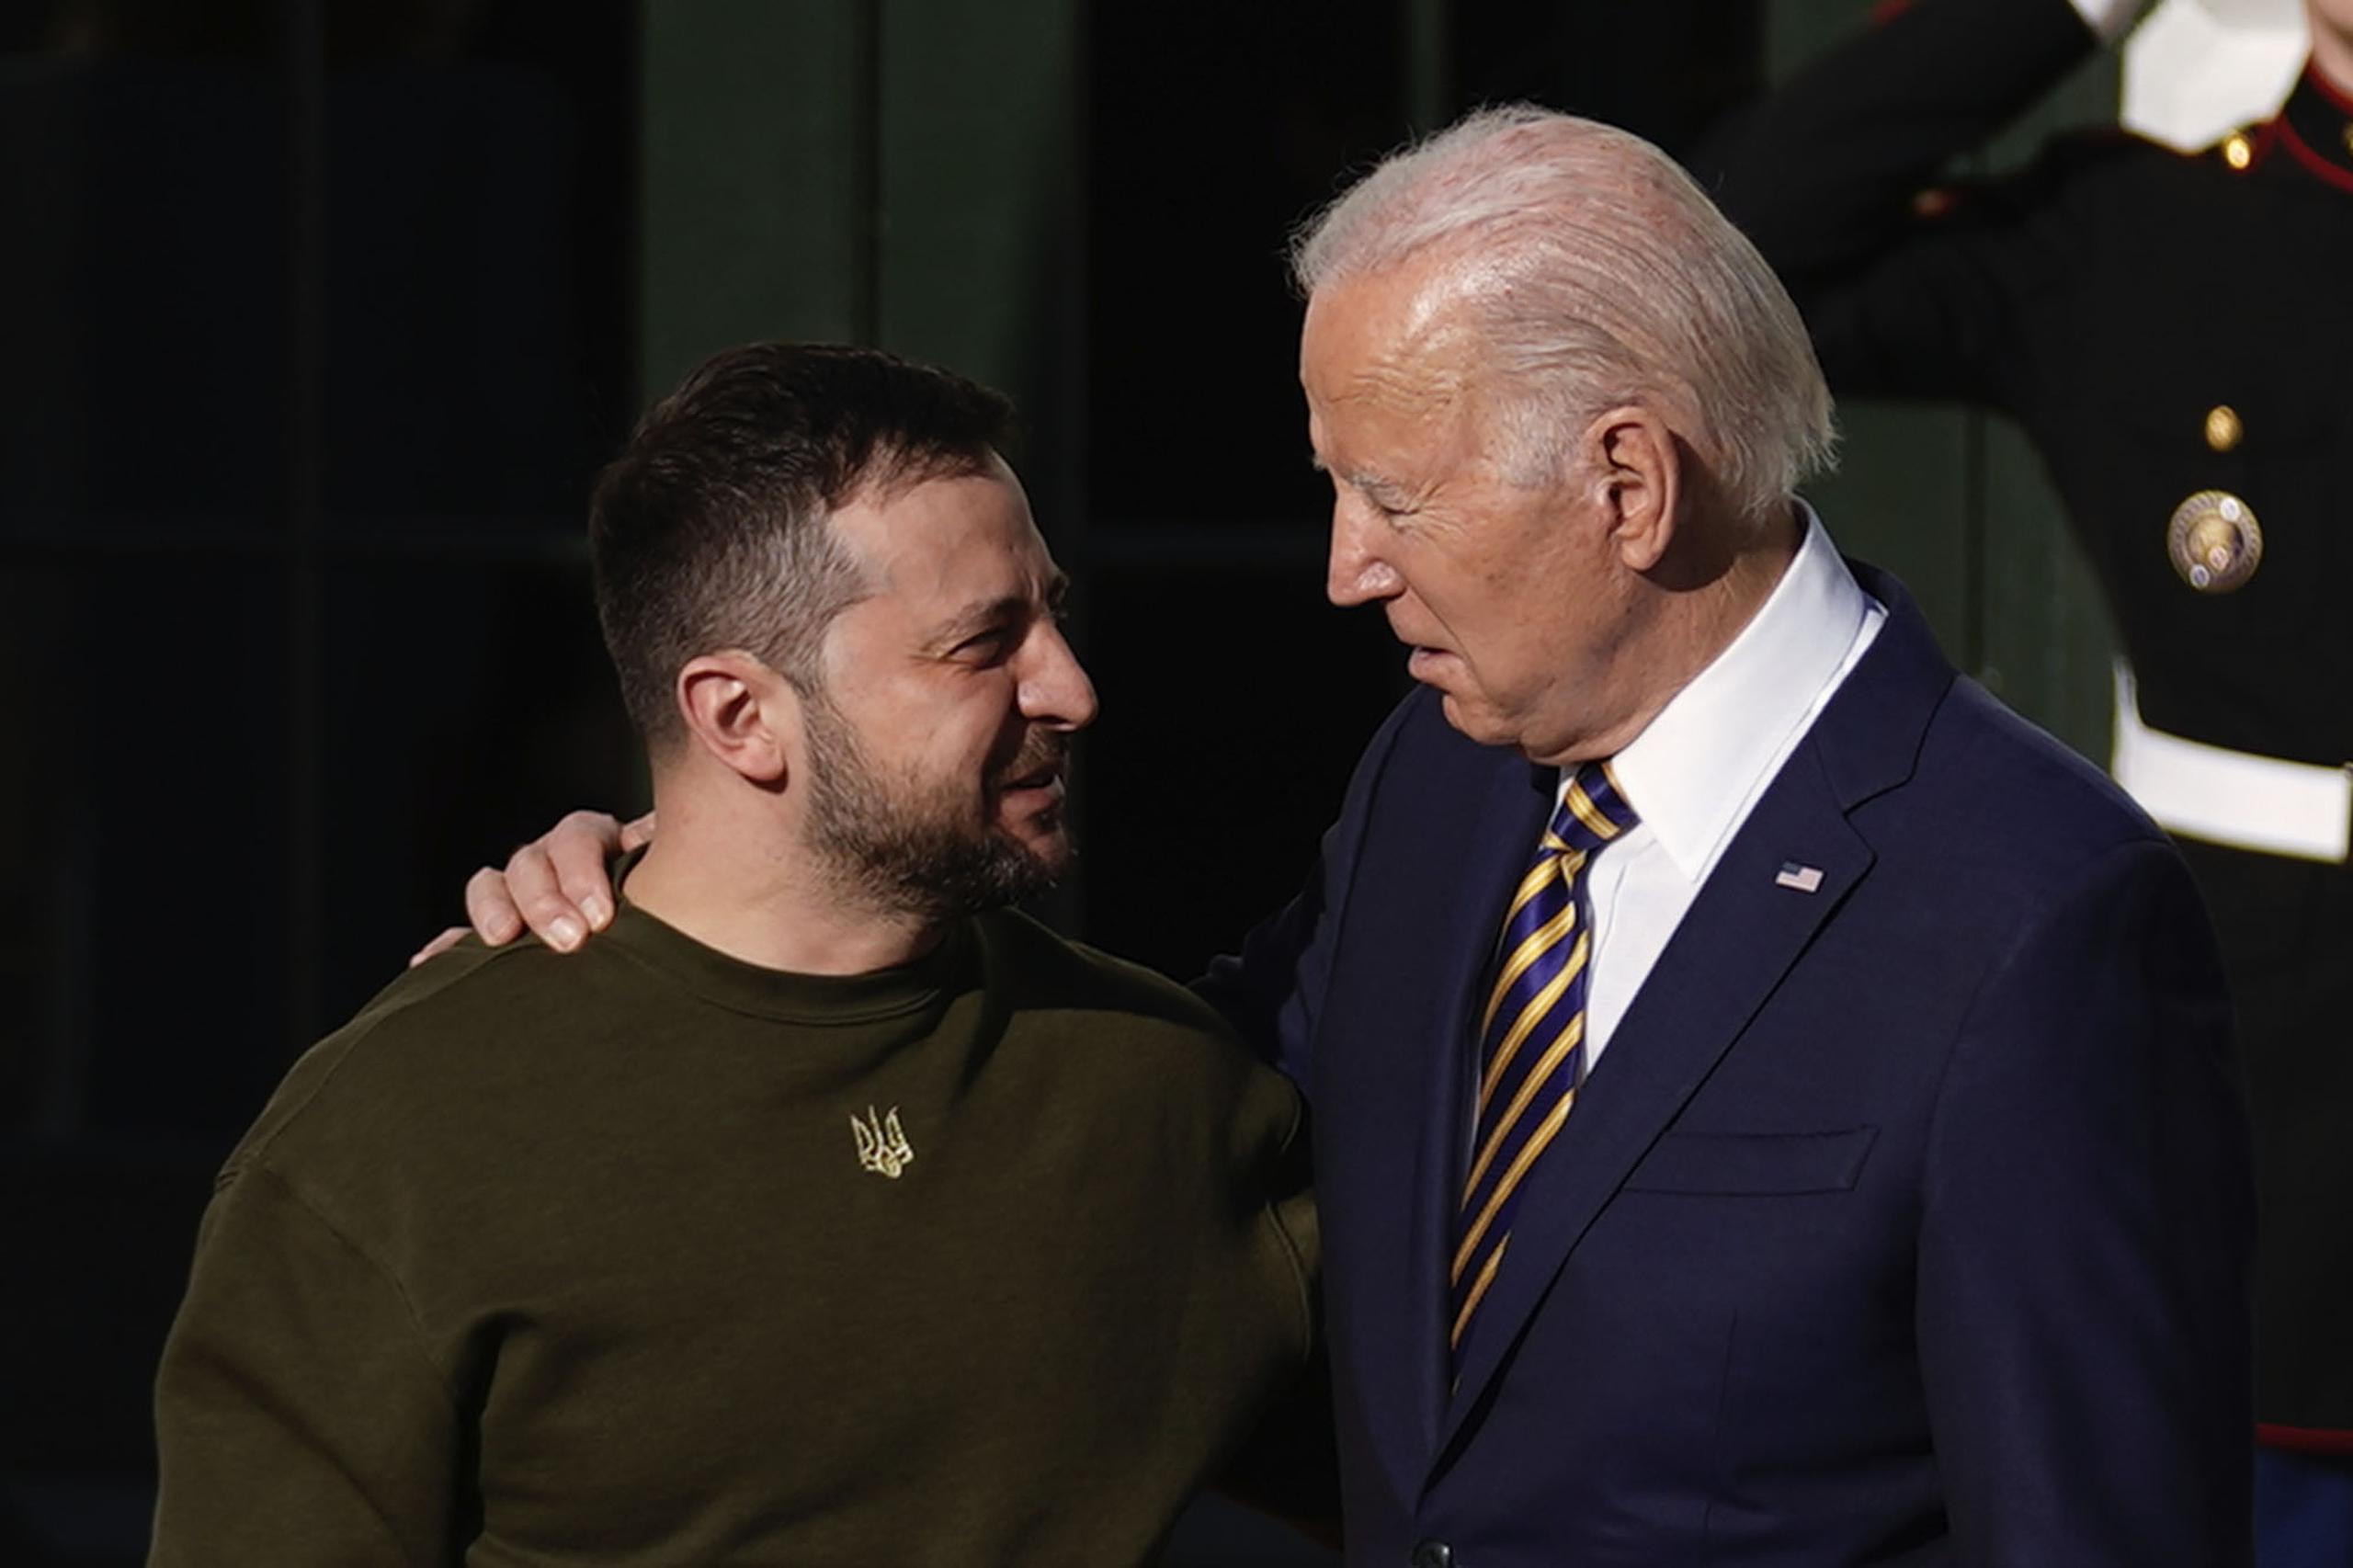 El presidente Joe Biden (a la derecha) recibió a su homólogo, Volodymyr Zelenskyy (a la izquierda), en la Casa Blanca en Washington, lo que sería su primer encuentro en persona.